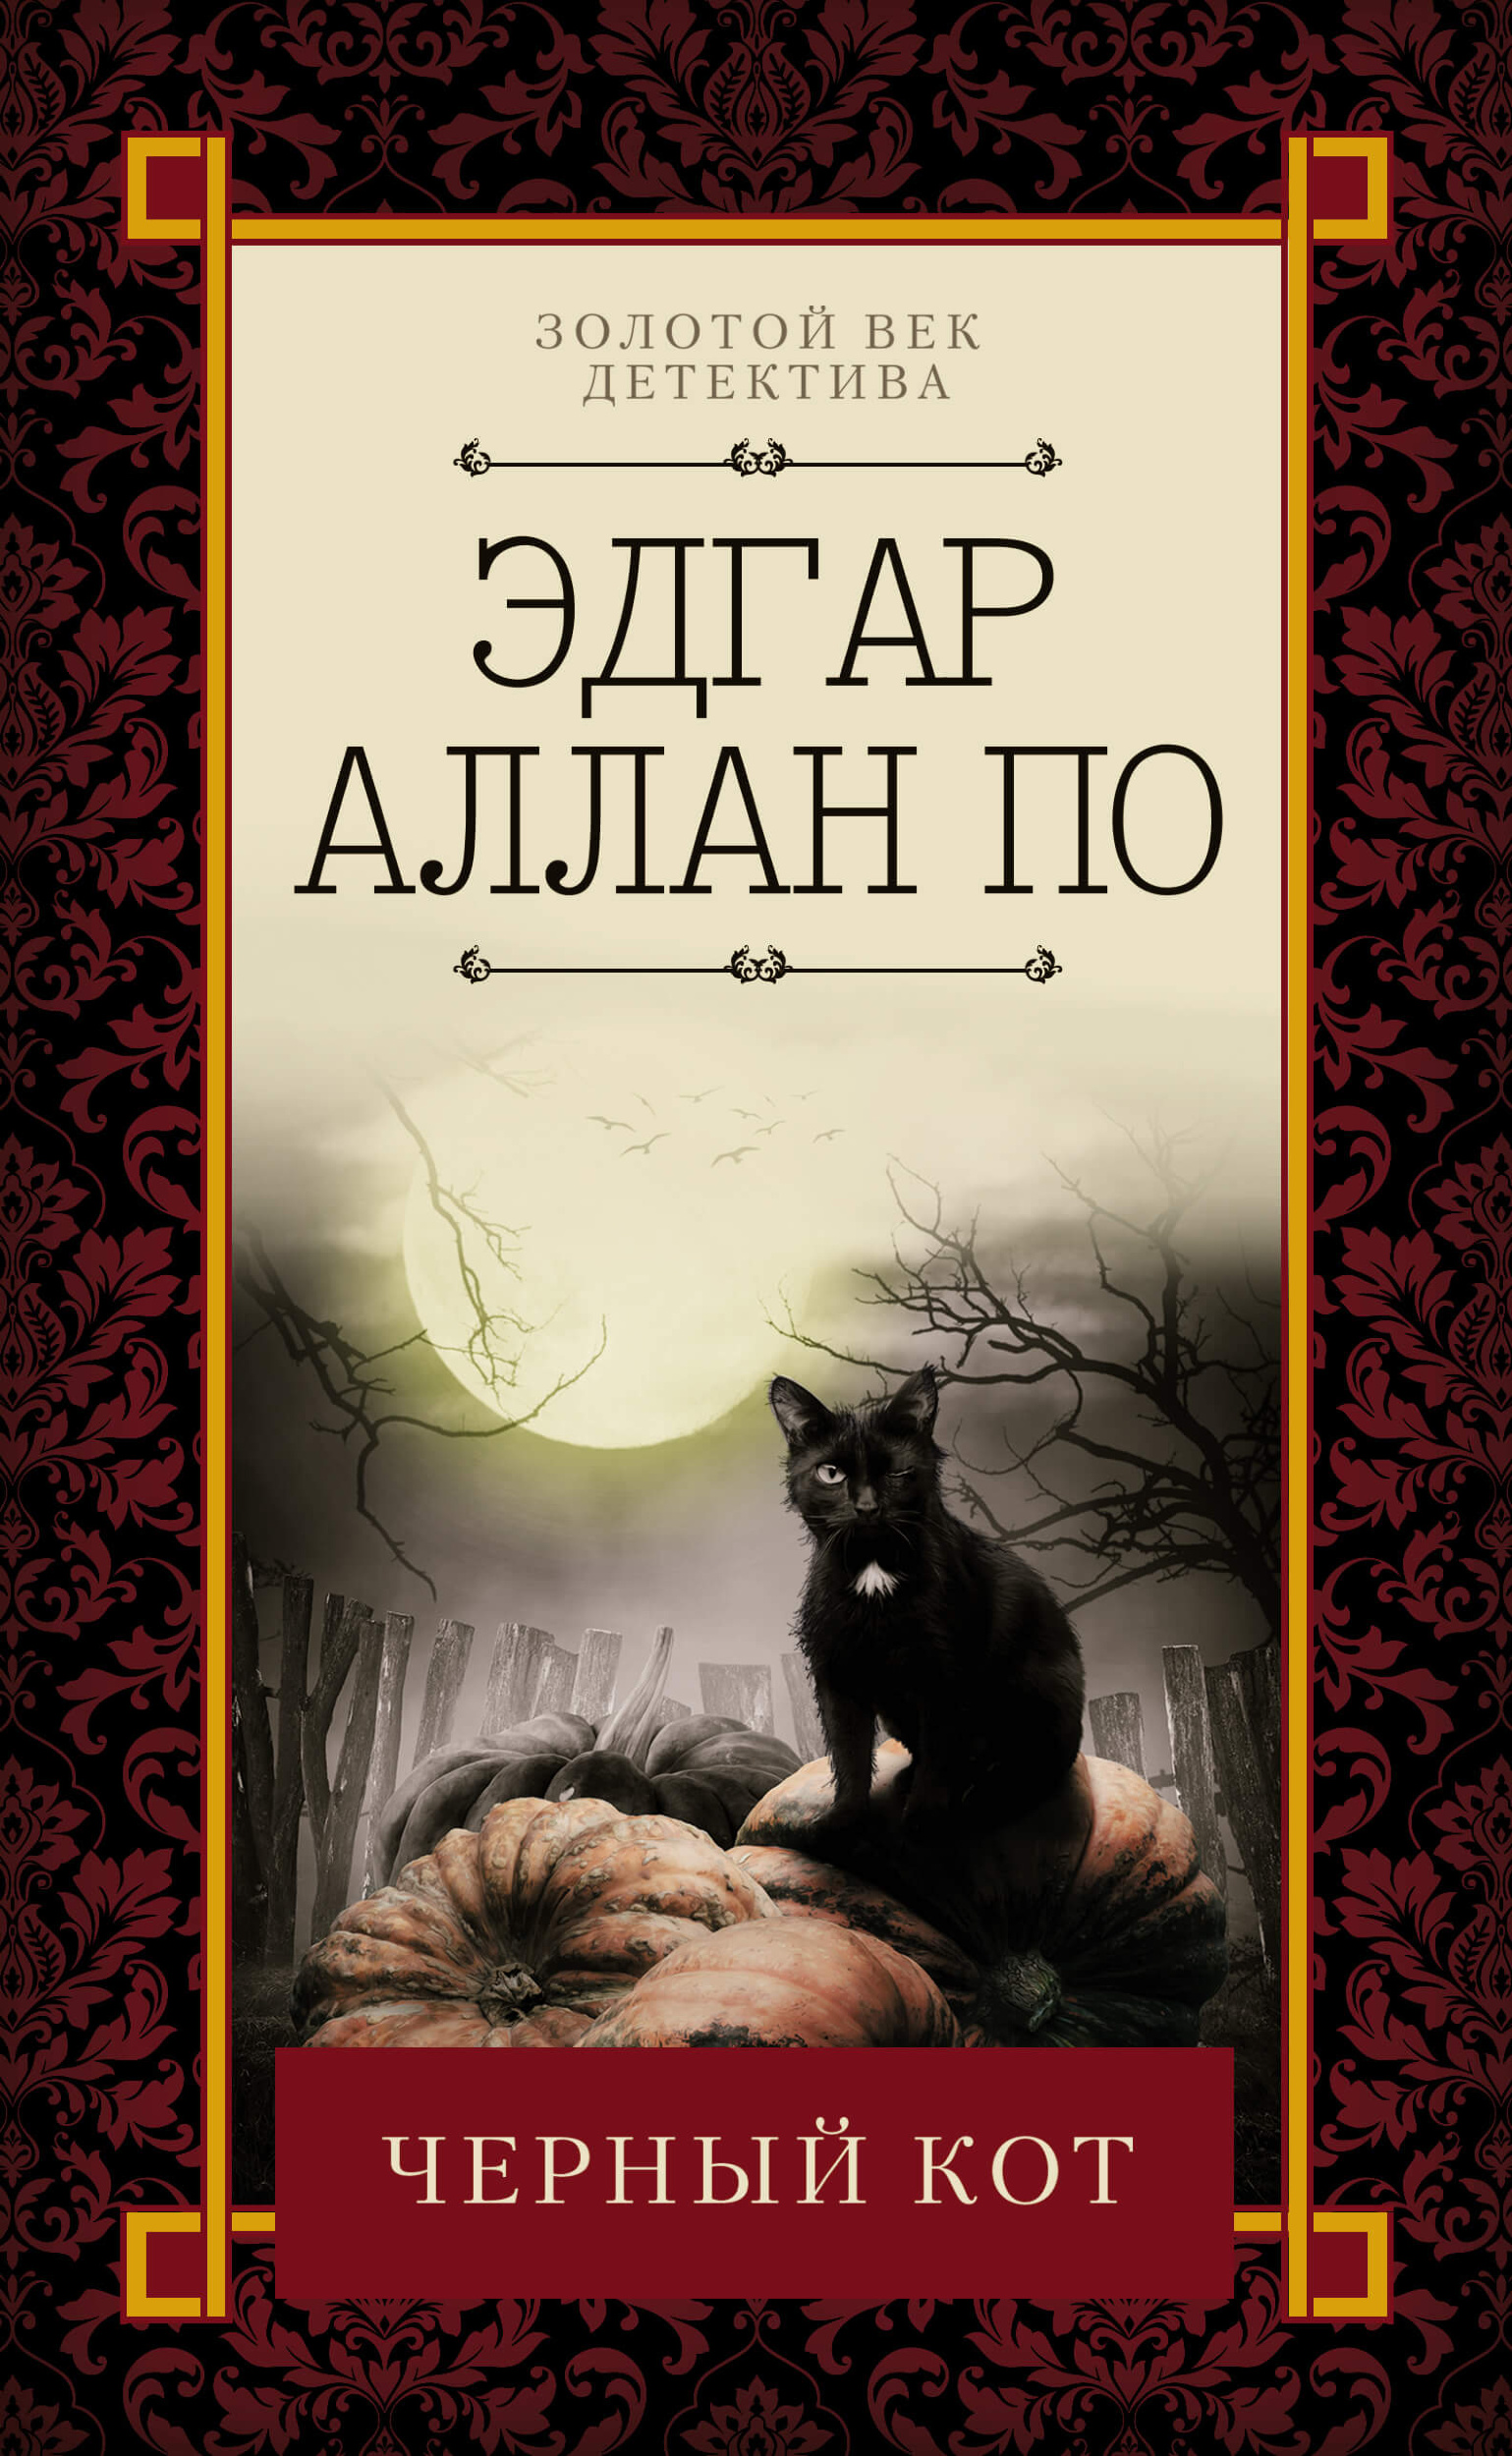 Черный кот. Автор — Эдгар Аллан По. 